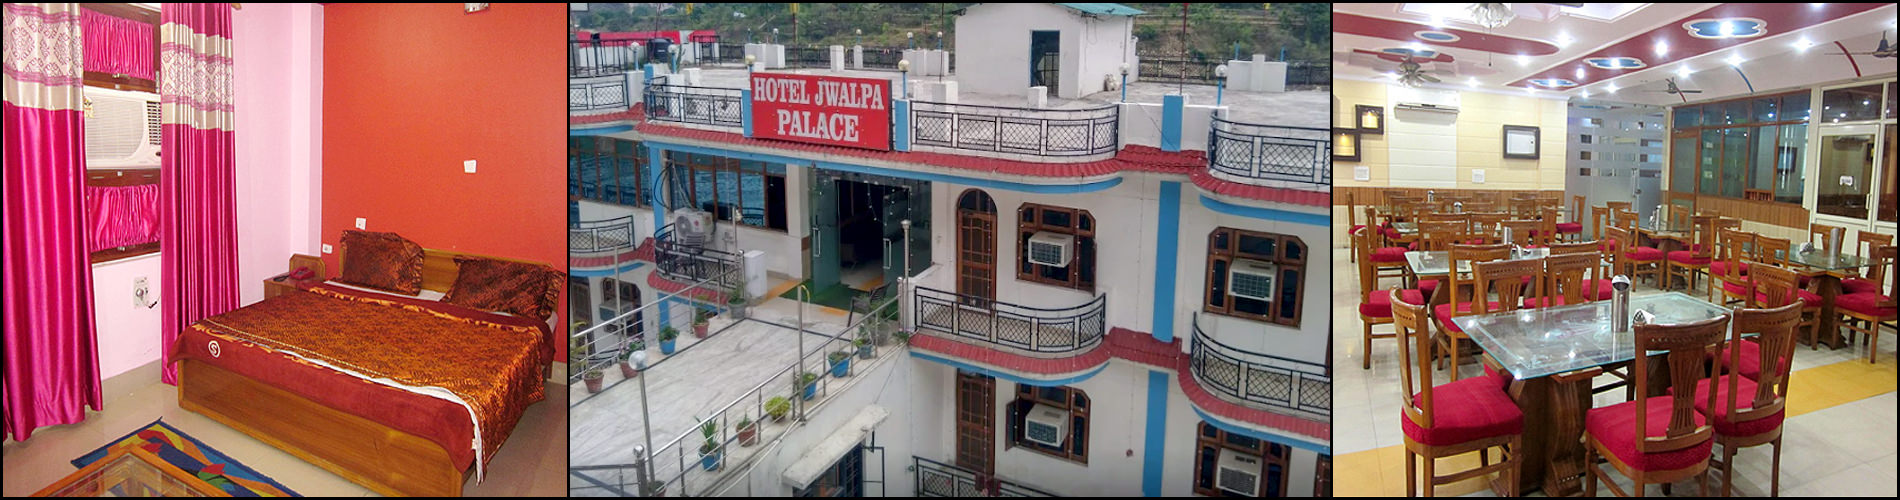 Hotel Jwalpa Palace